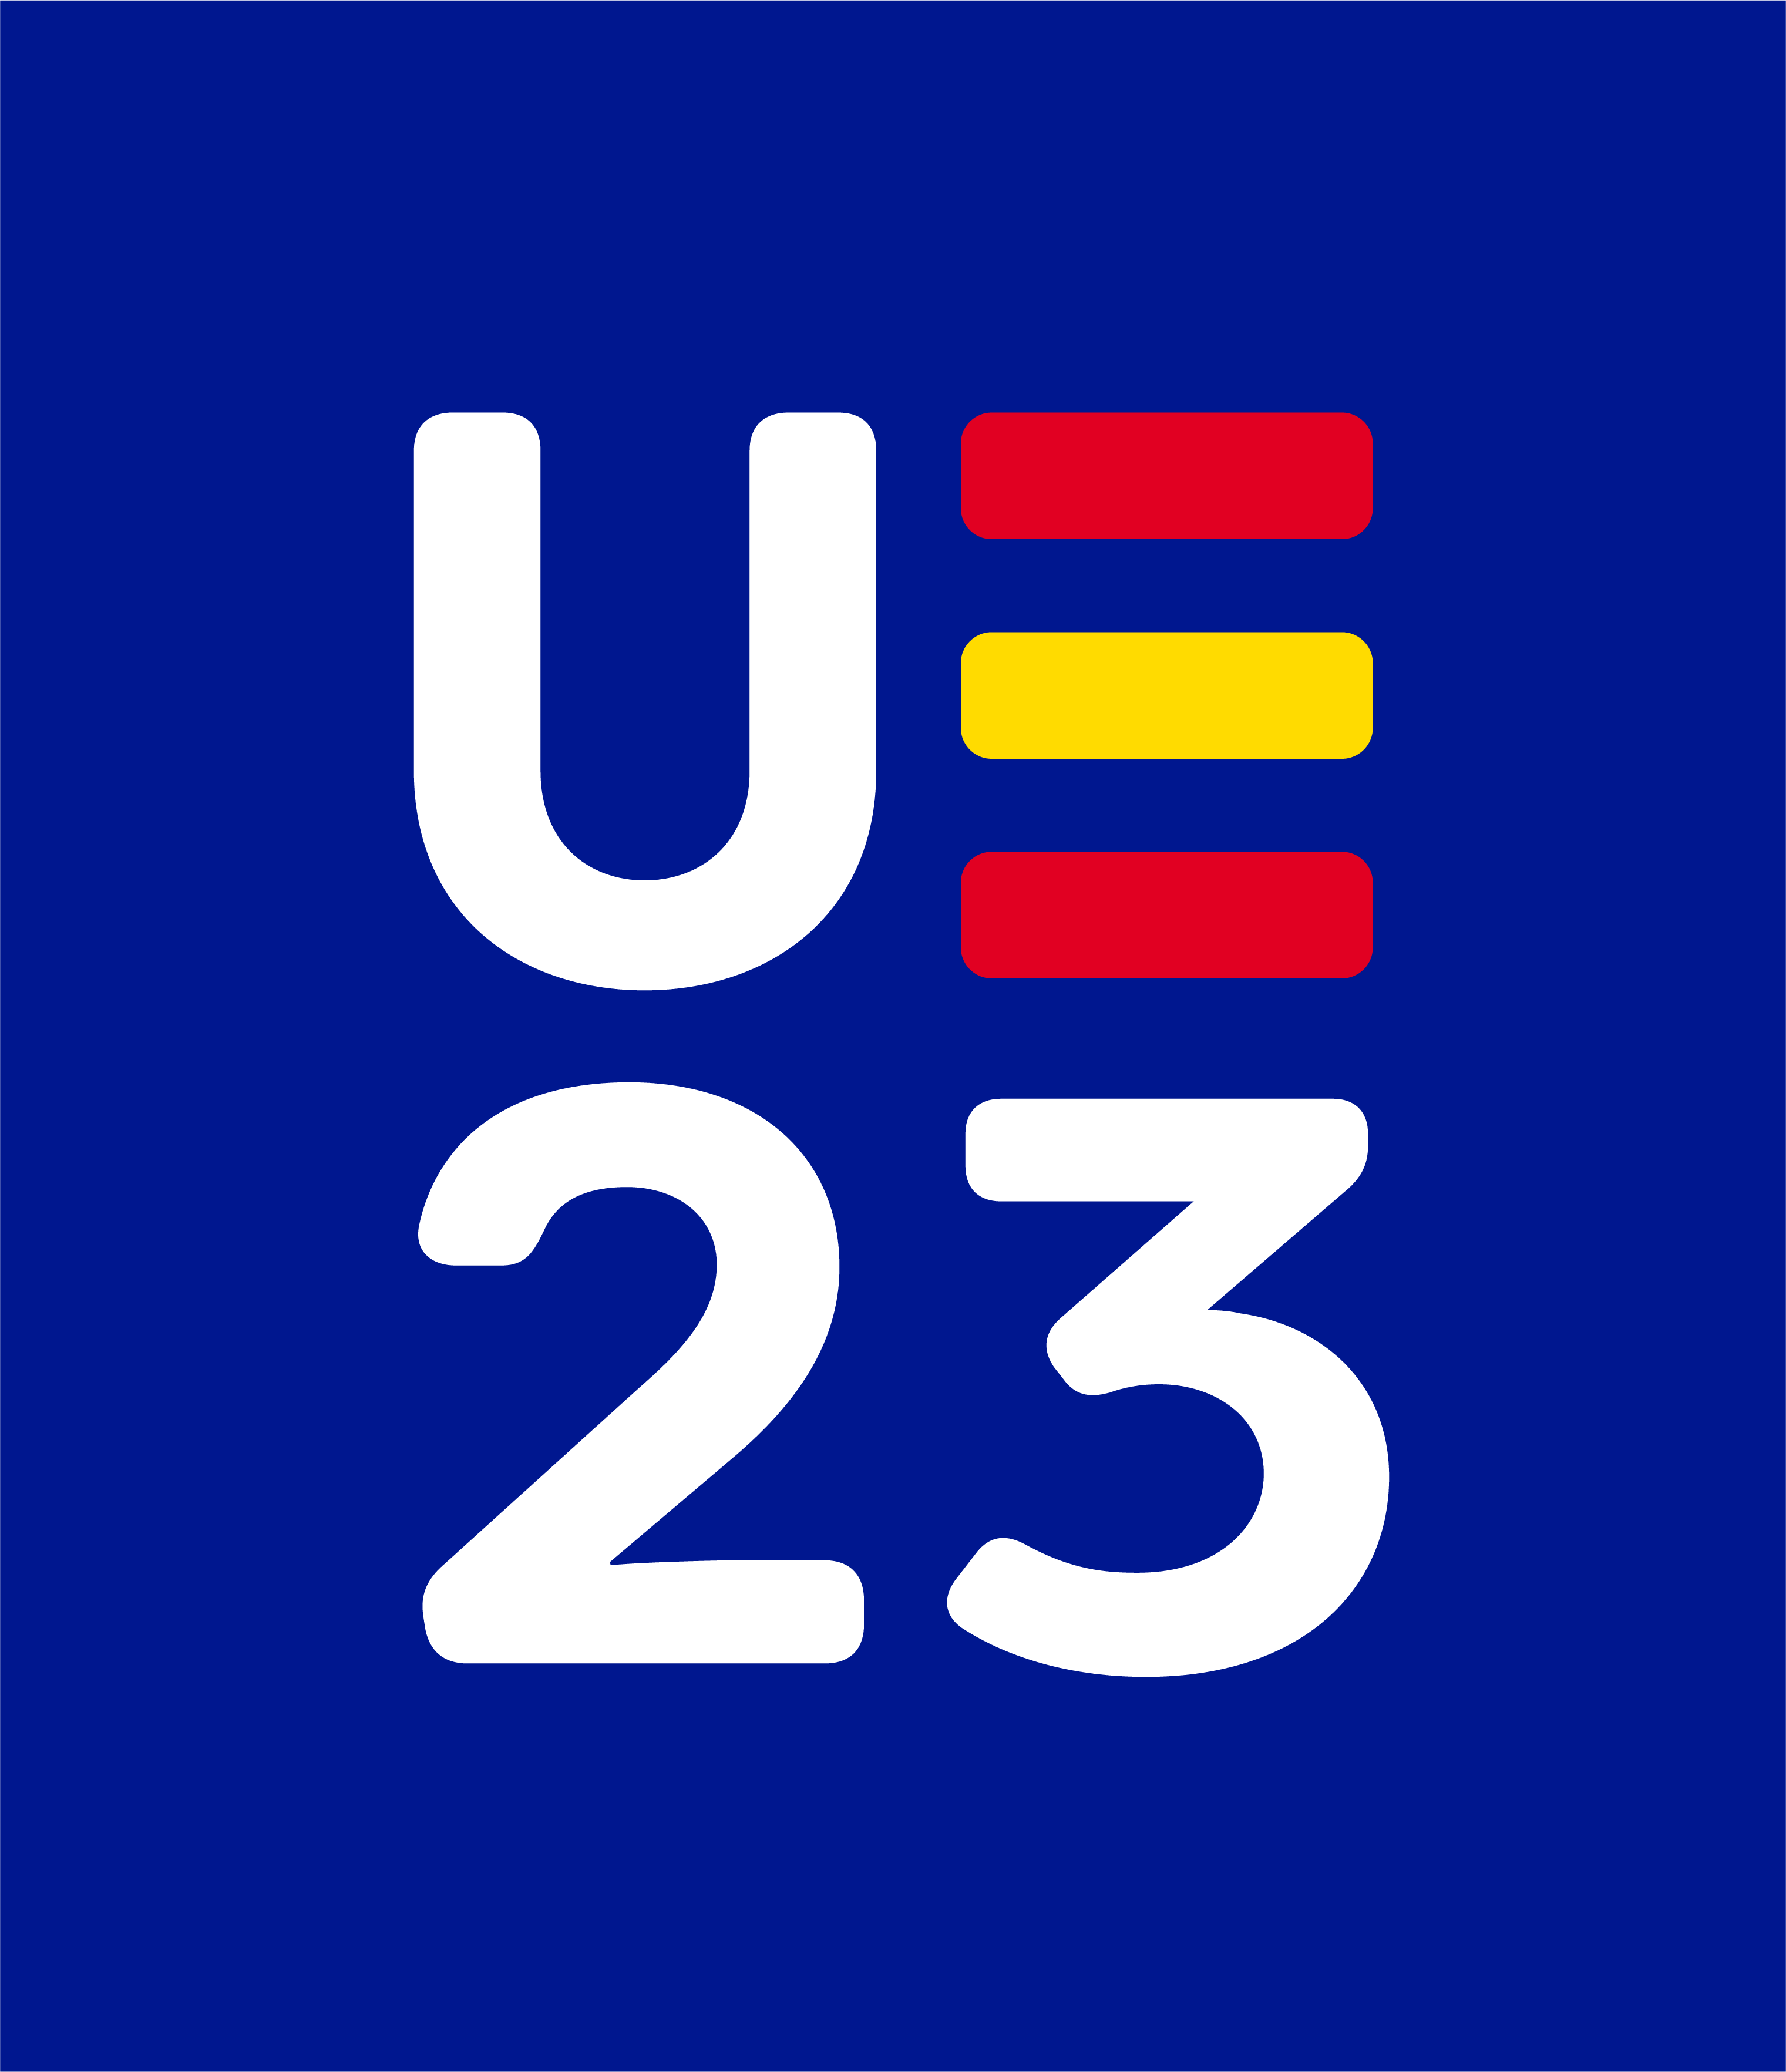 Logo UE23